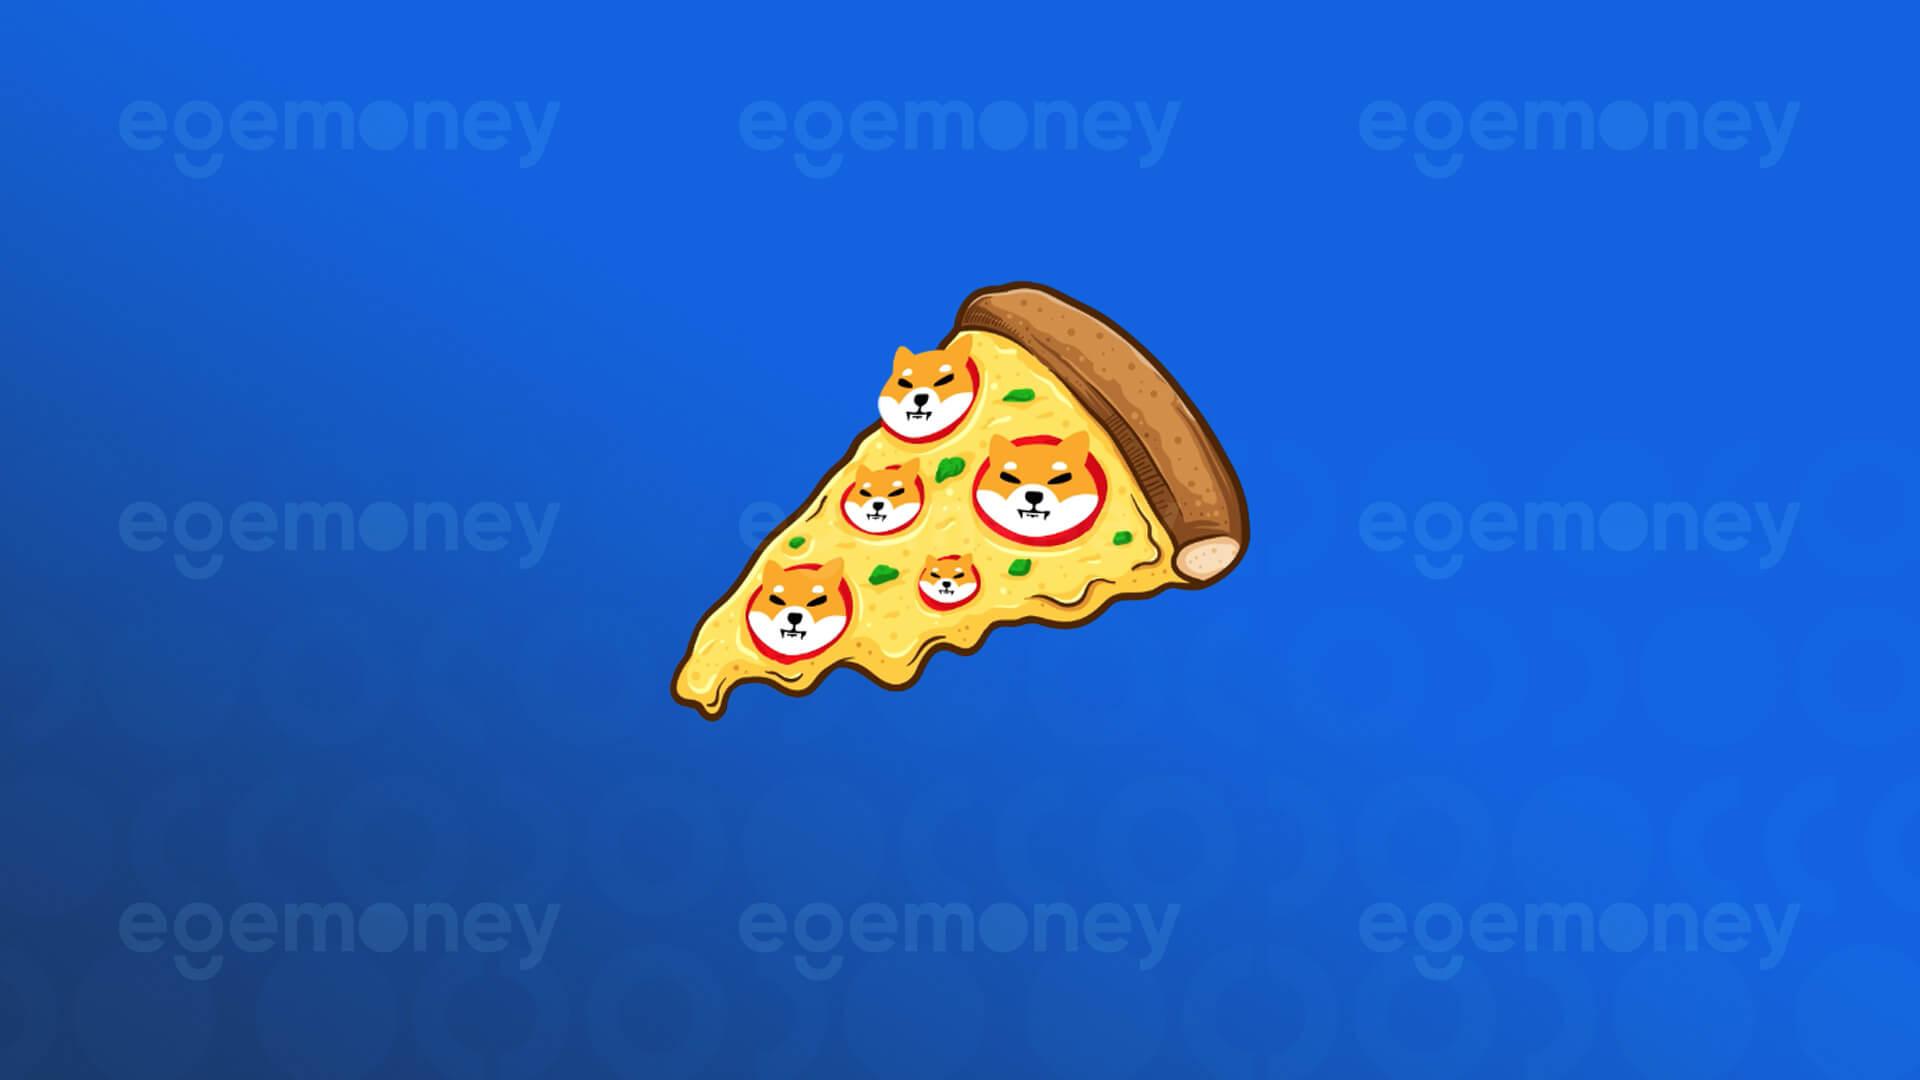 Bitcoin Pizza Day Campaign